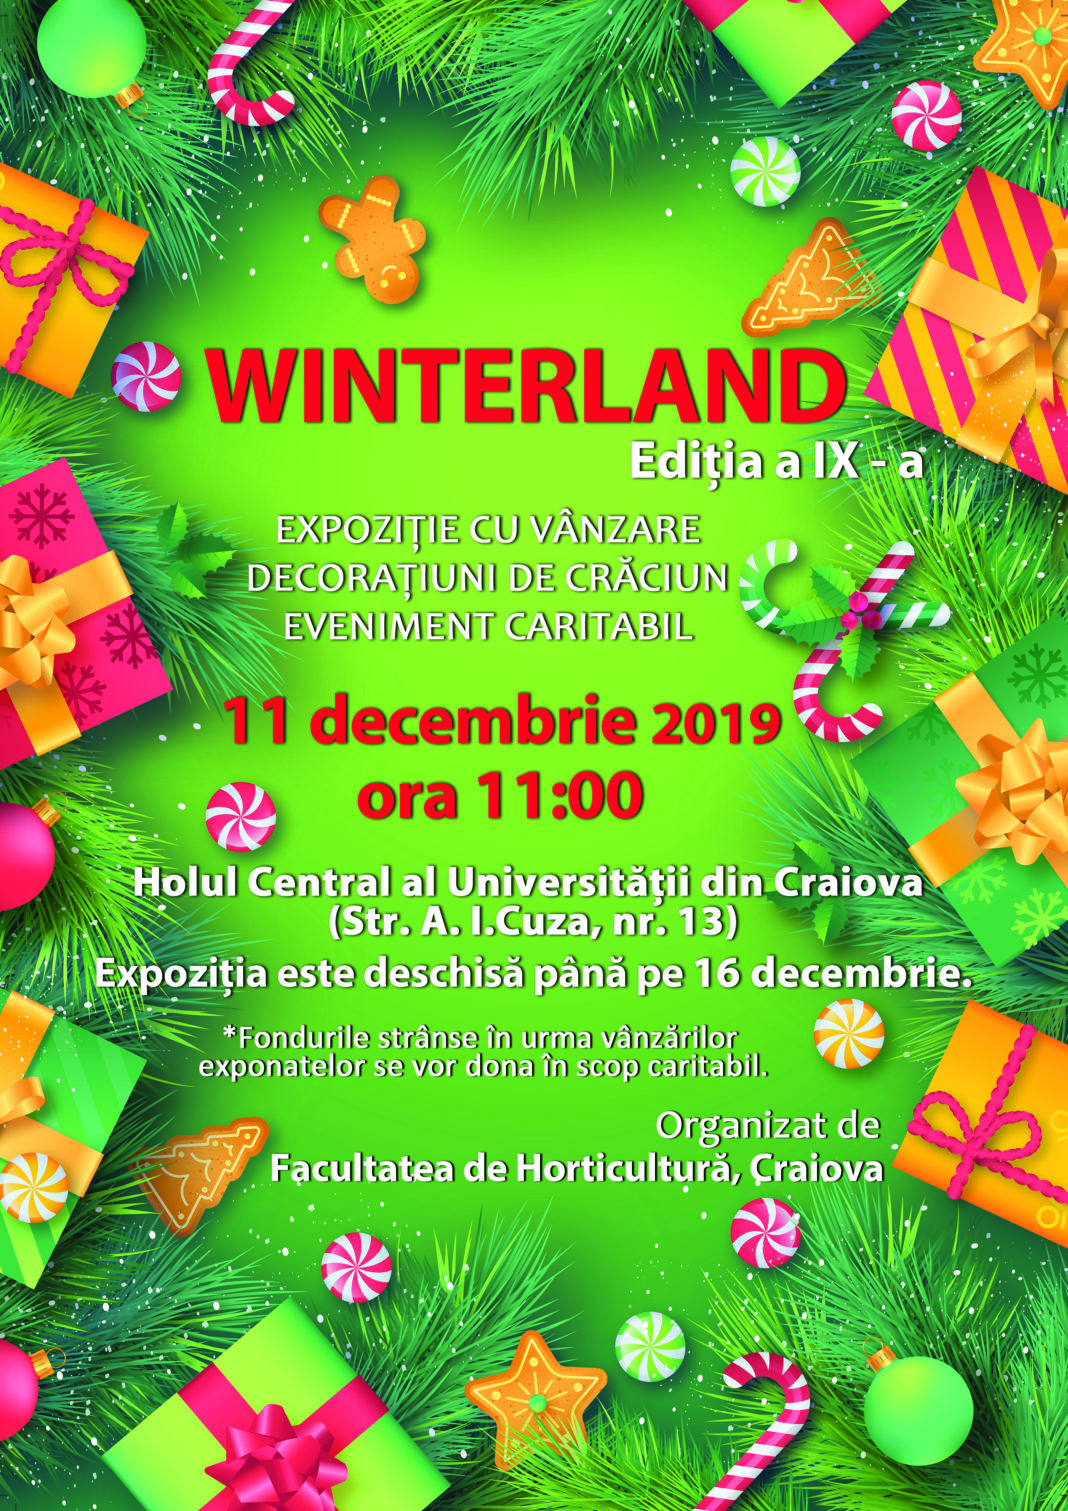 Târgul de Crăciun WINTERLAND, 2019, la Universitatea Craiova